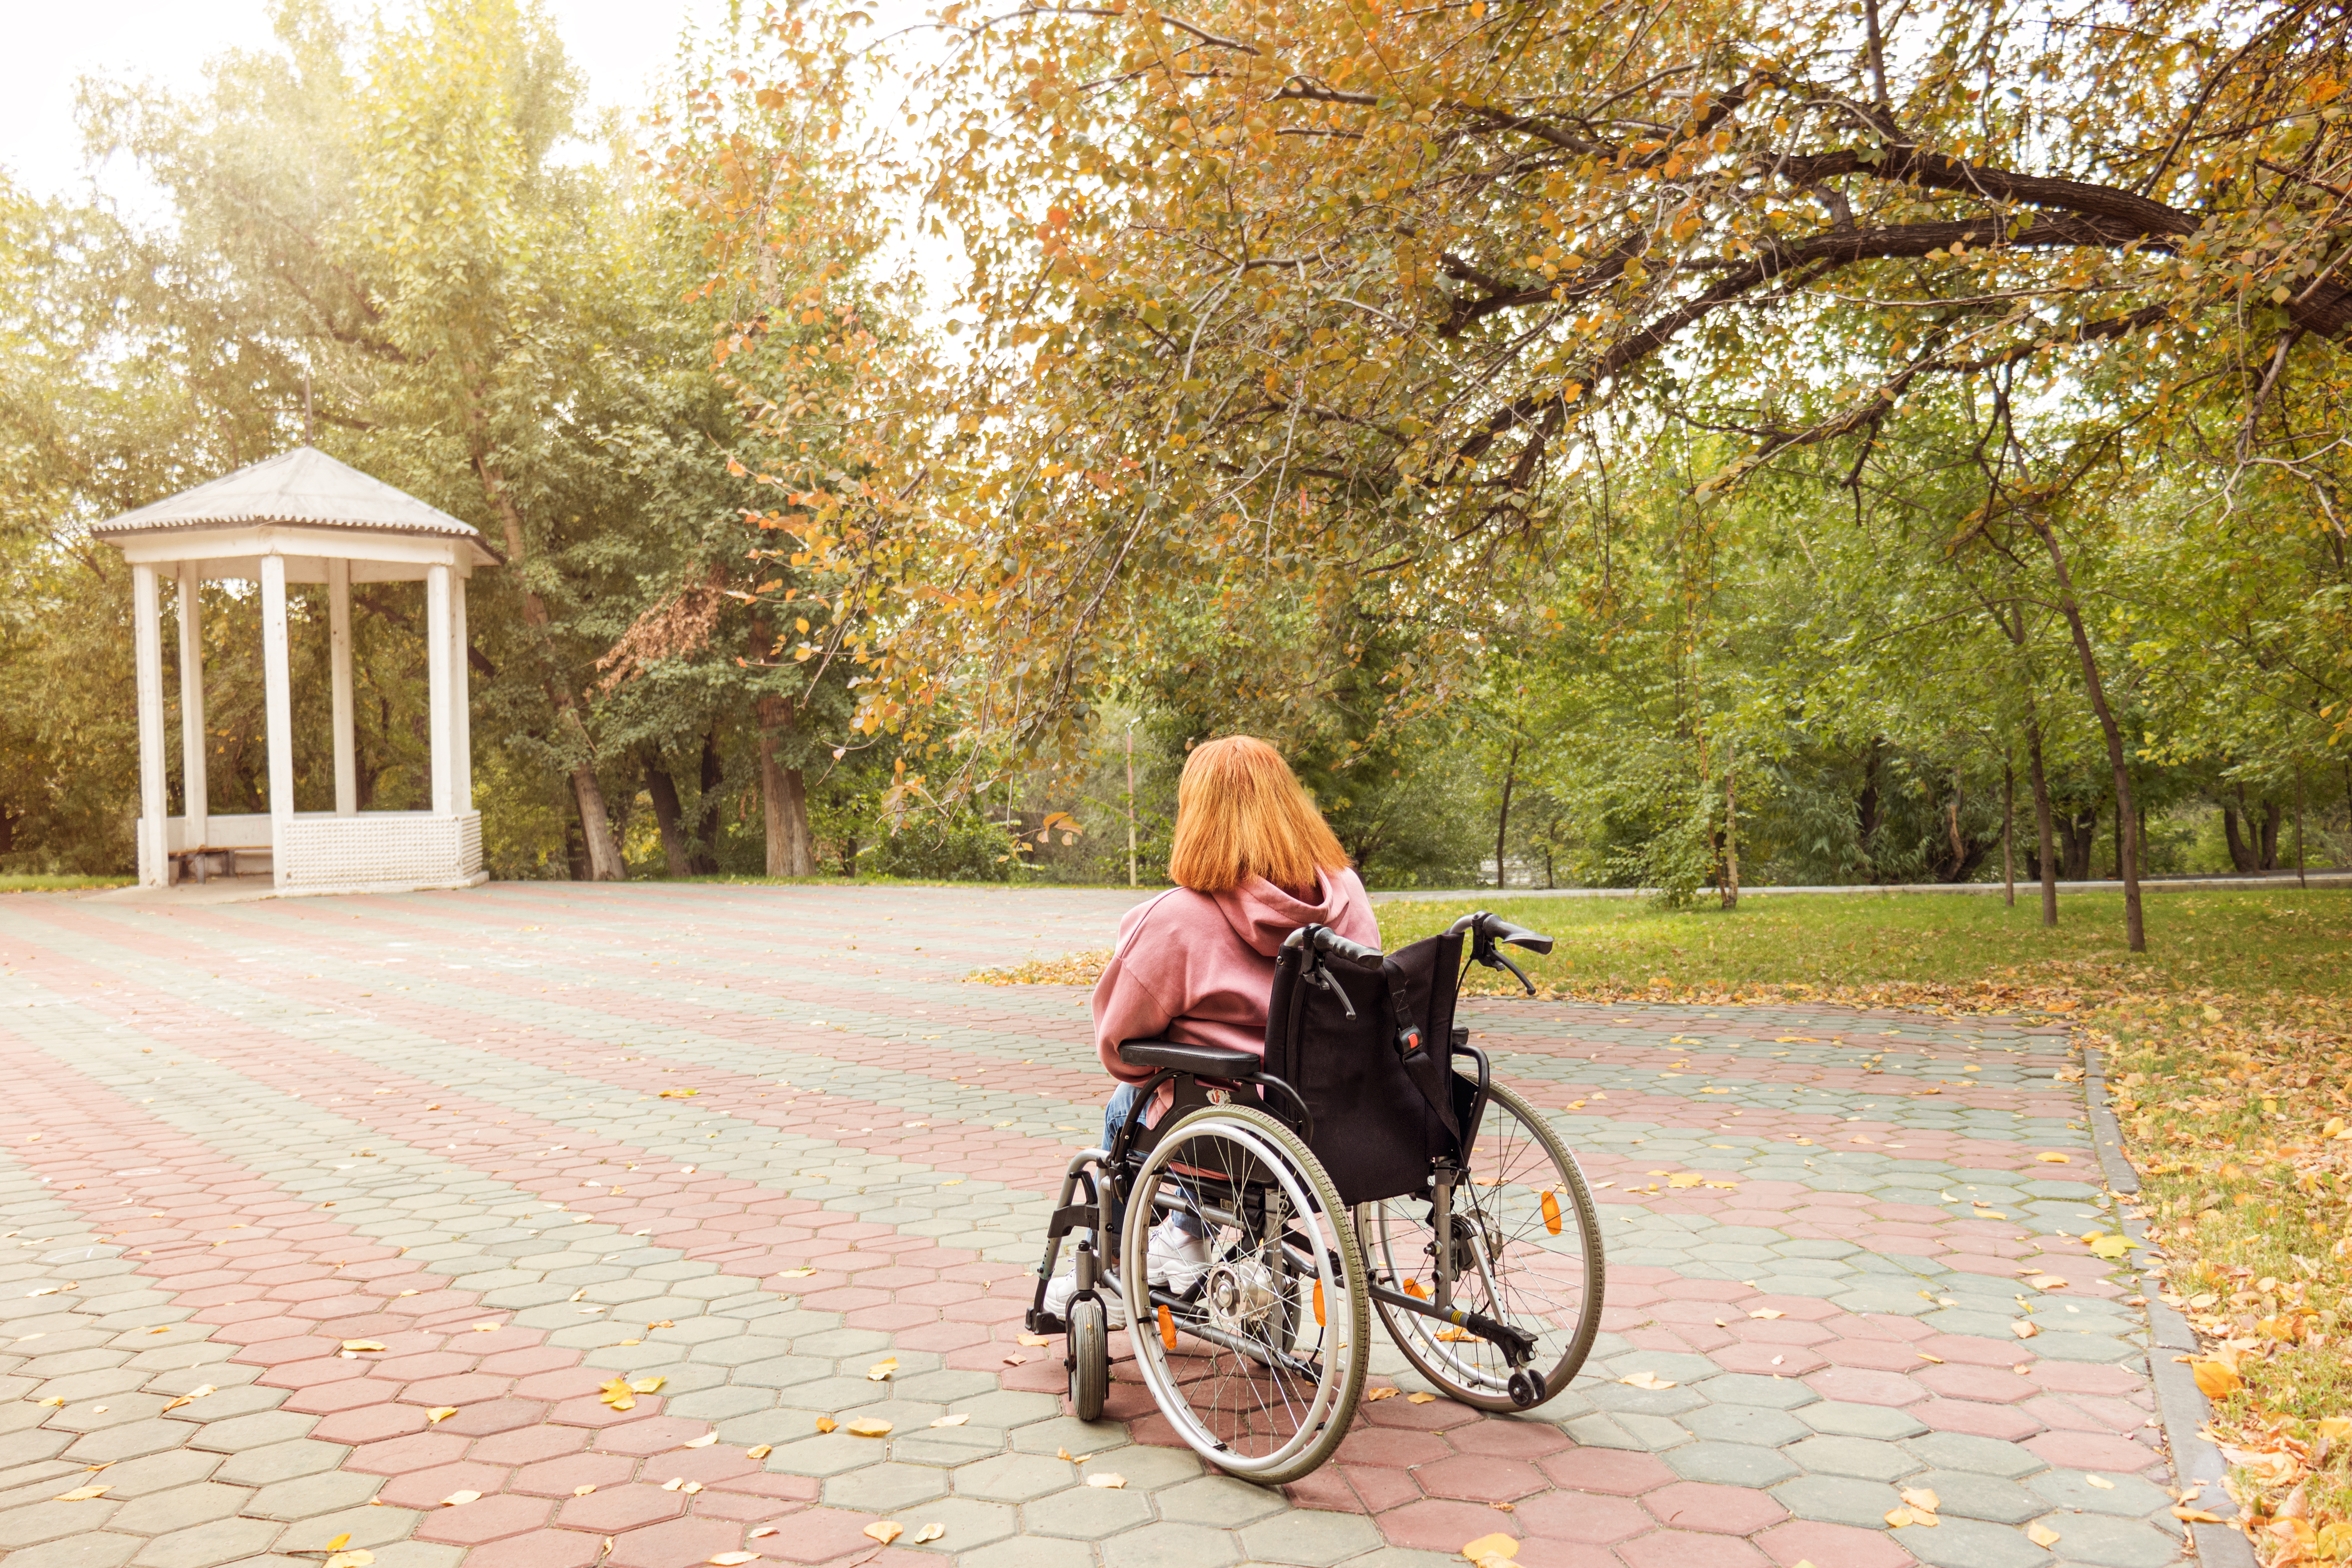 A girl in a wheelchair | Source: Shuttertstock